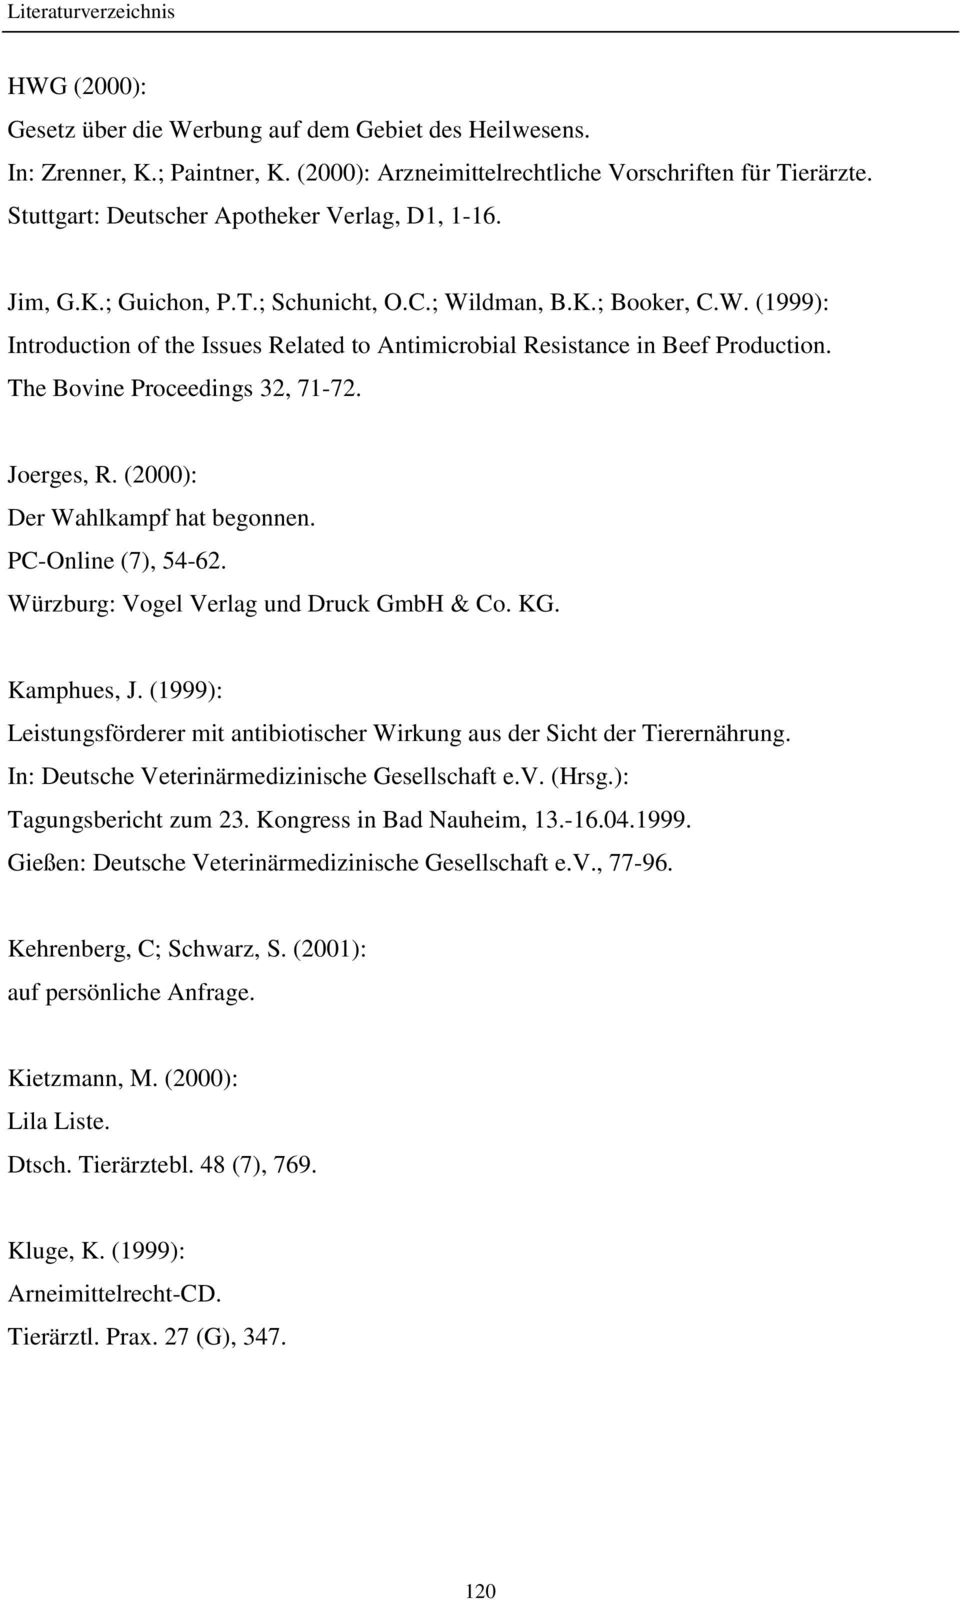 The Bovine Proceedings 32, 71-72. Joerges, R. (2000): Der Wahlkampf hat begonnen. PC-Online (7), 54-62. Würzburg: Vogel Verlag und Druck GmbH & Co. KG. Kamphues, J.